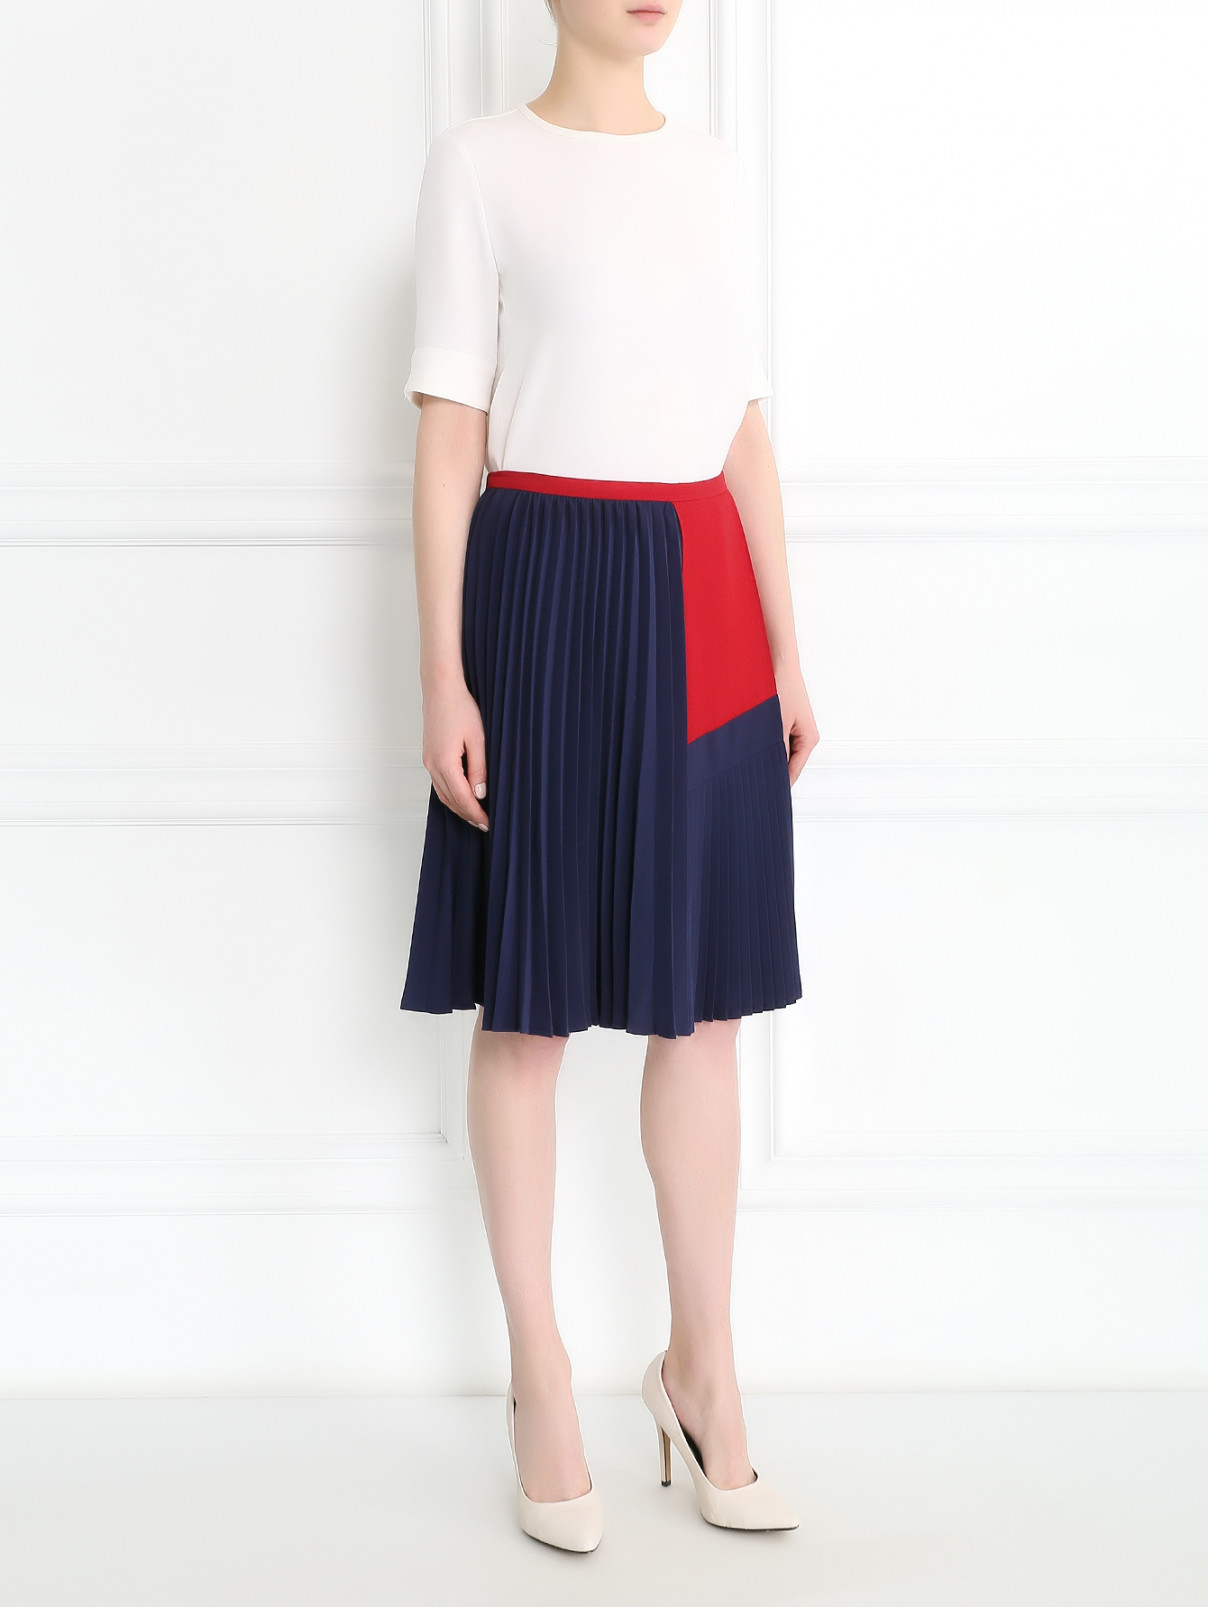 Плиссированная юбка с контрастной вставкой Antonio Marras  –  Модель Общий вид  – Цвет:  Синий